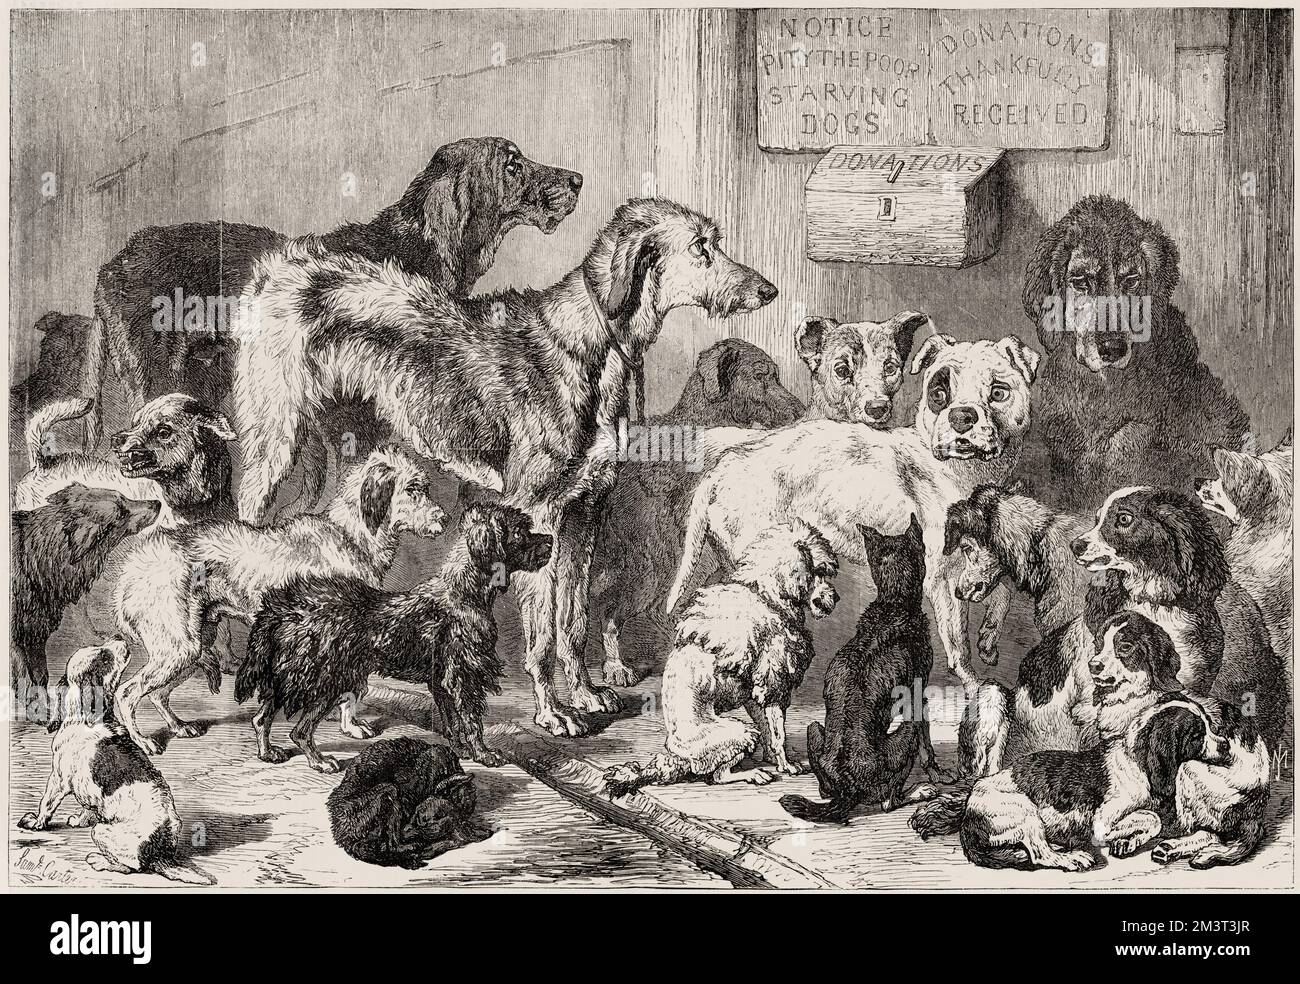 Casa per cani persi e affamati, Hollingsworth Street nel nord di Londra, zona di Islington / Holloway. Questa fu la prima iterazione della casa di Battersea Dogs prima che si trasferì nel 1871 a Battersea, nel sud di Londra. "The Temporary Home for Lost & Tasting Dogs", come era noto per la prima volta, è stata fondata nel 1860 dalla signora Mary Tealby e da una commissione per gli amanti degli animali, a Holloway, nel nord di Londra. Foto Stock